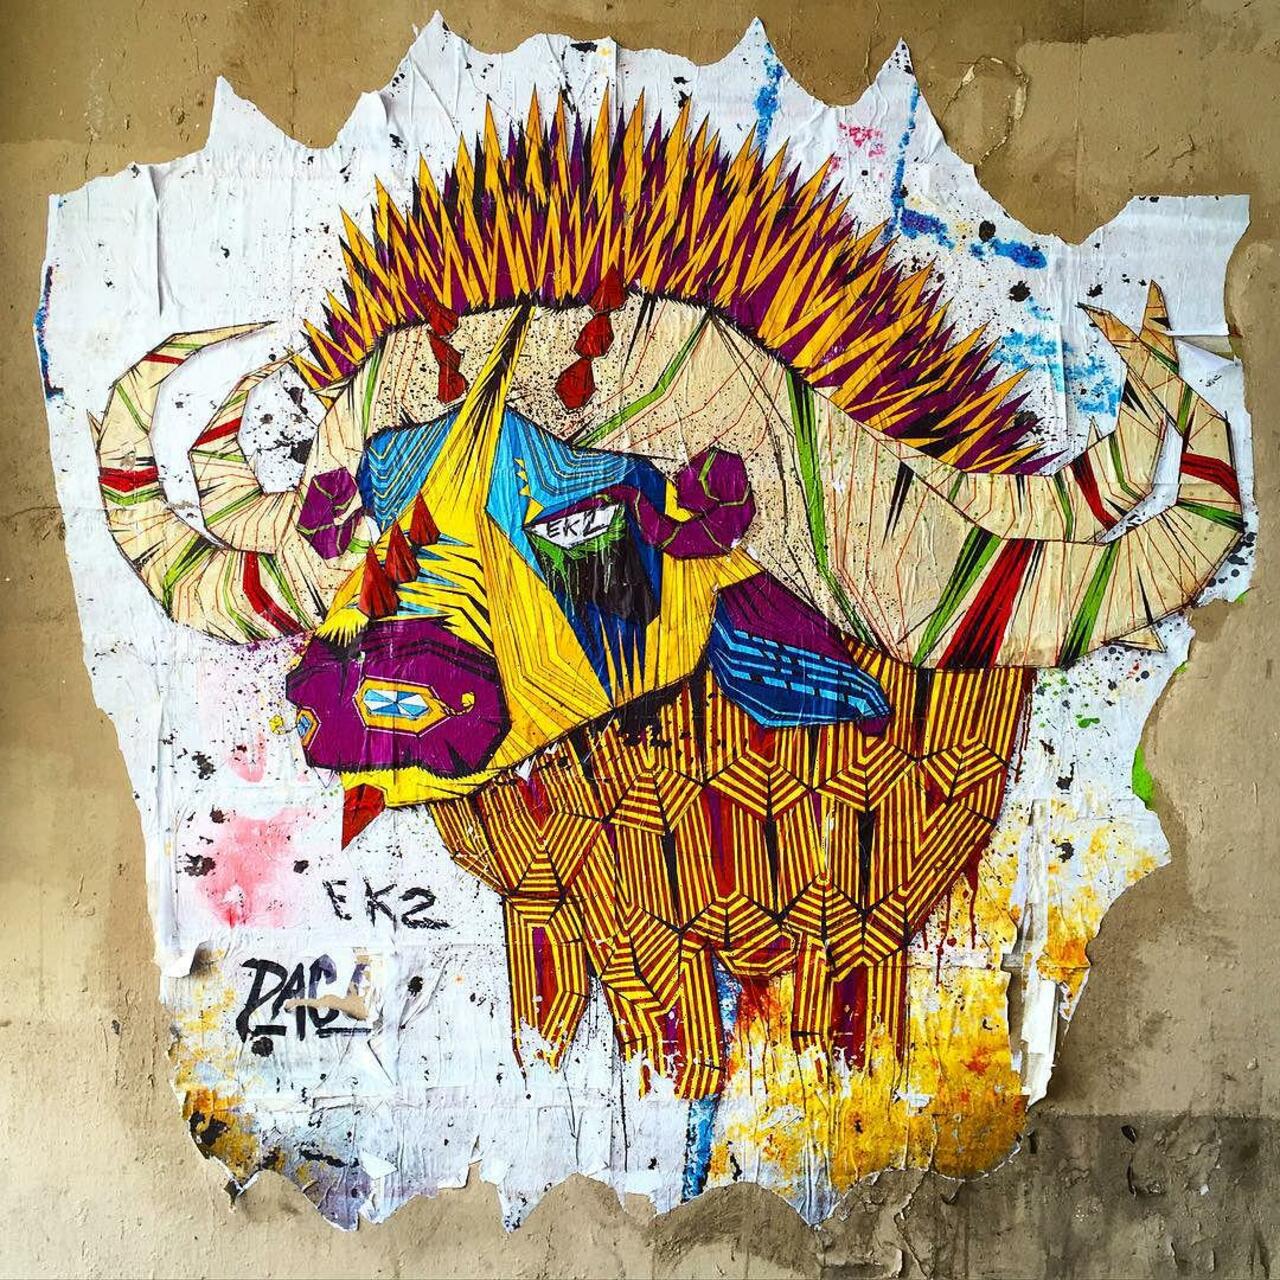 RT @circumjacent_fr: #Paris #graffiti photo by @jeanlucr http://ift.tt/1VIaa7L #StreetArt http://t.co/e8nnzdfLIE